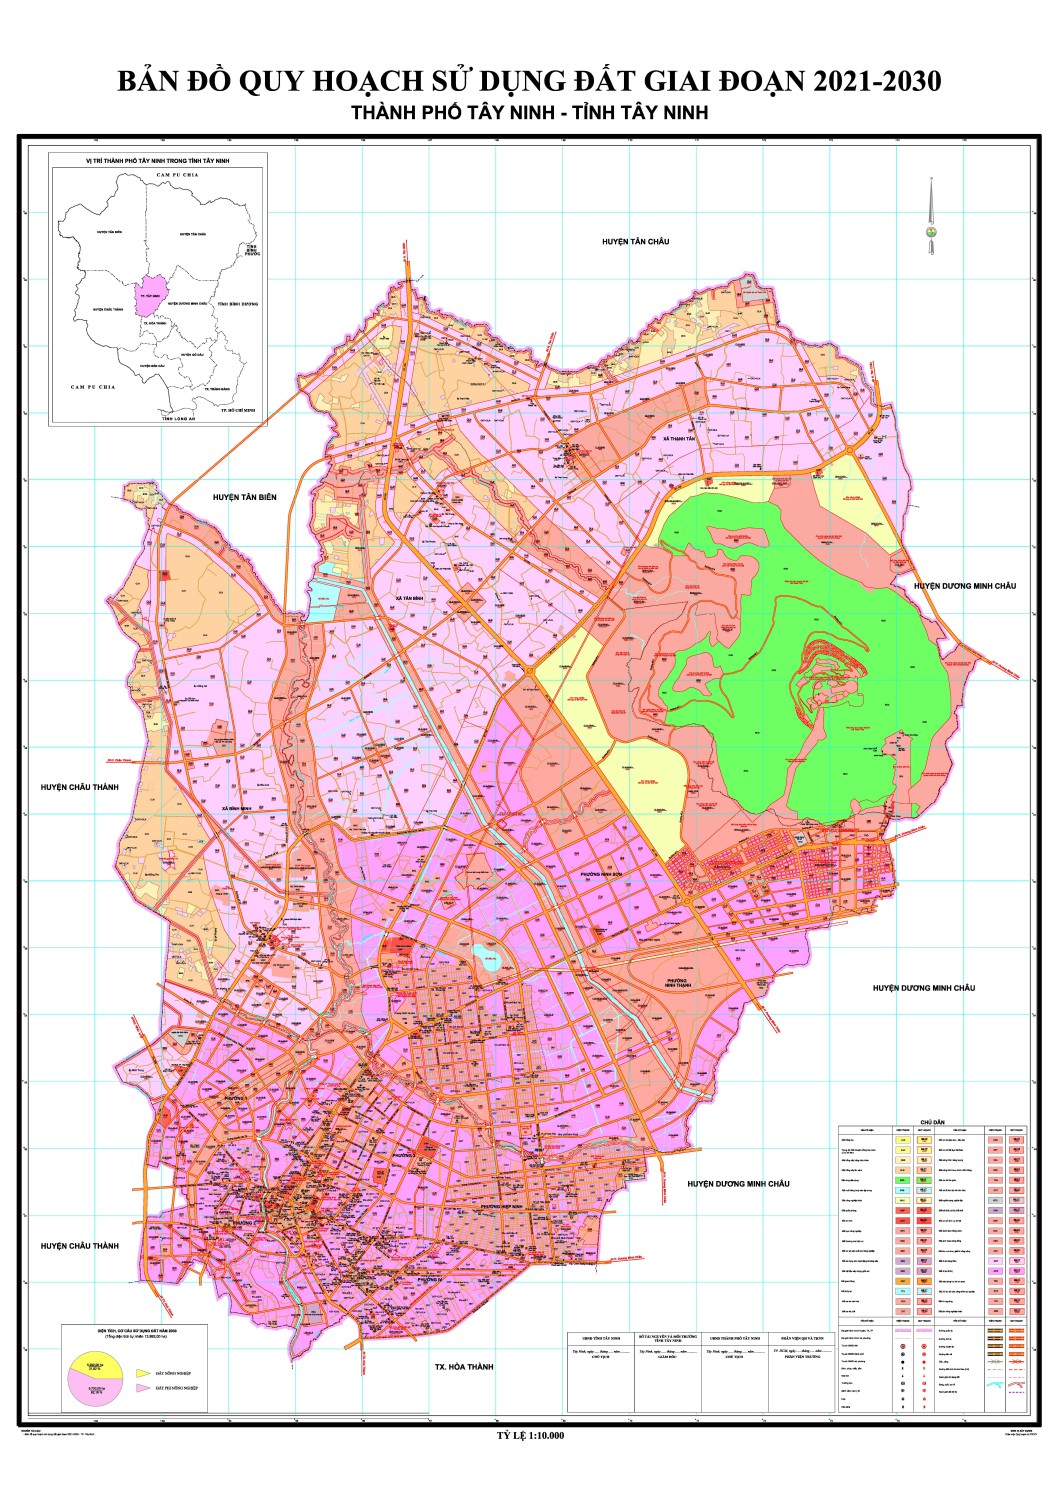 Tìm hiểu bản đồ quy hoạch đất và vai trò quan trọng trong phát triển đô thị